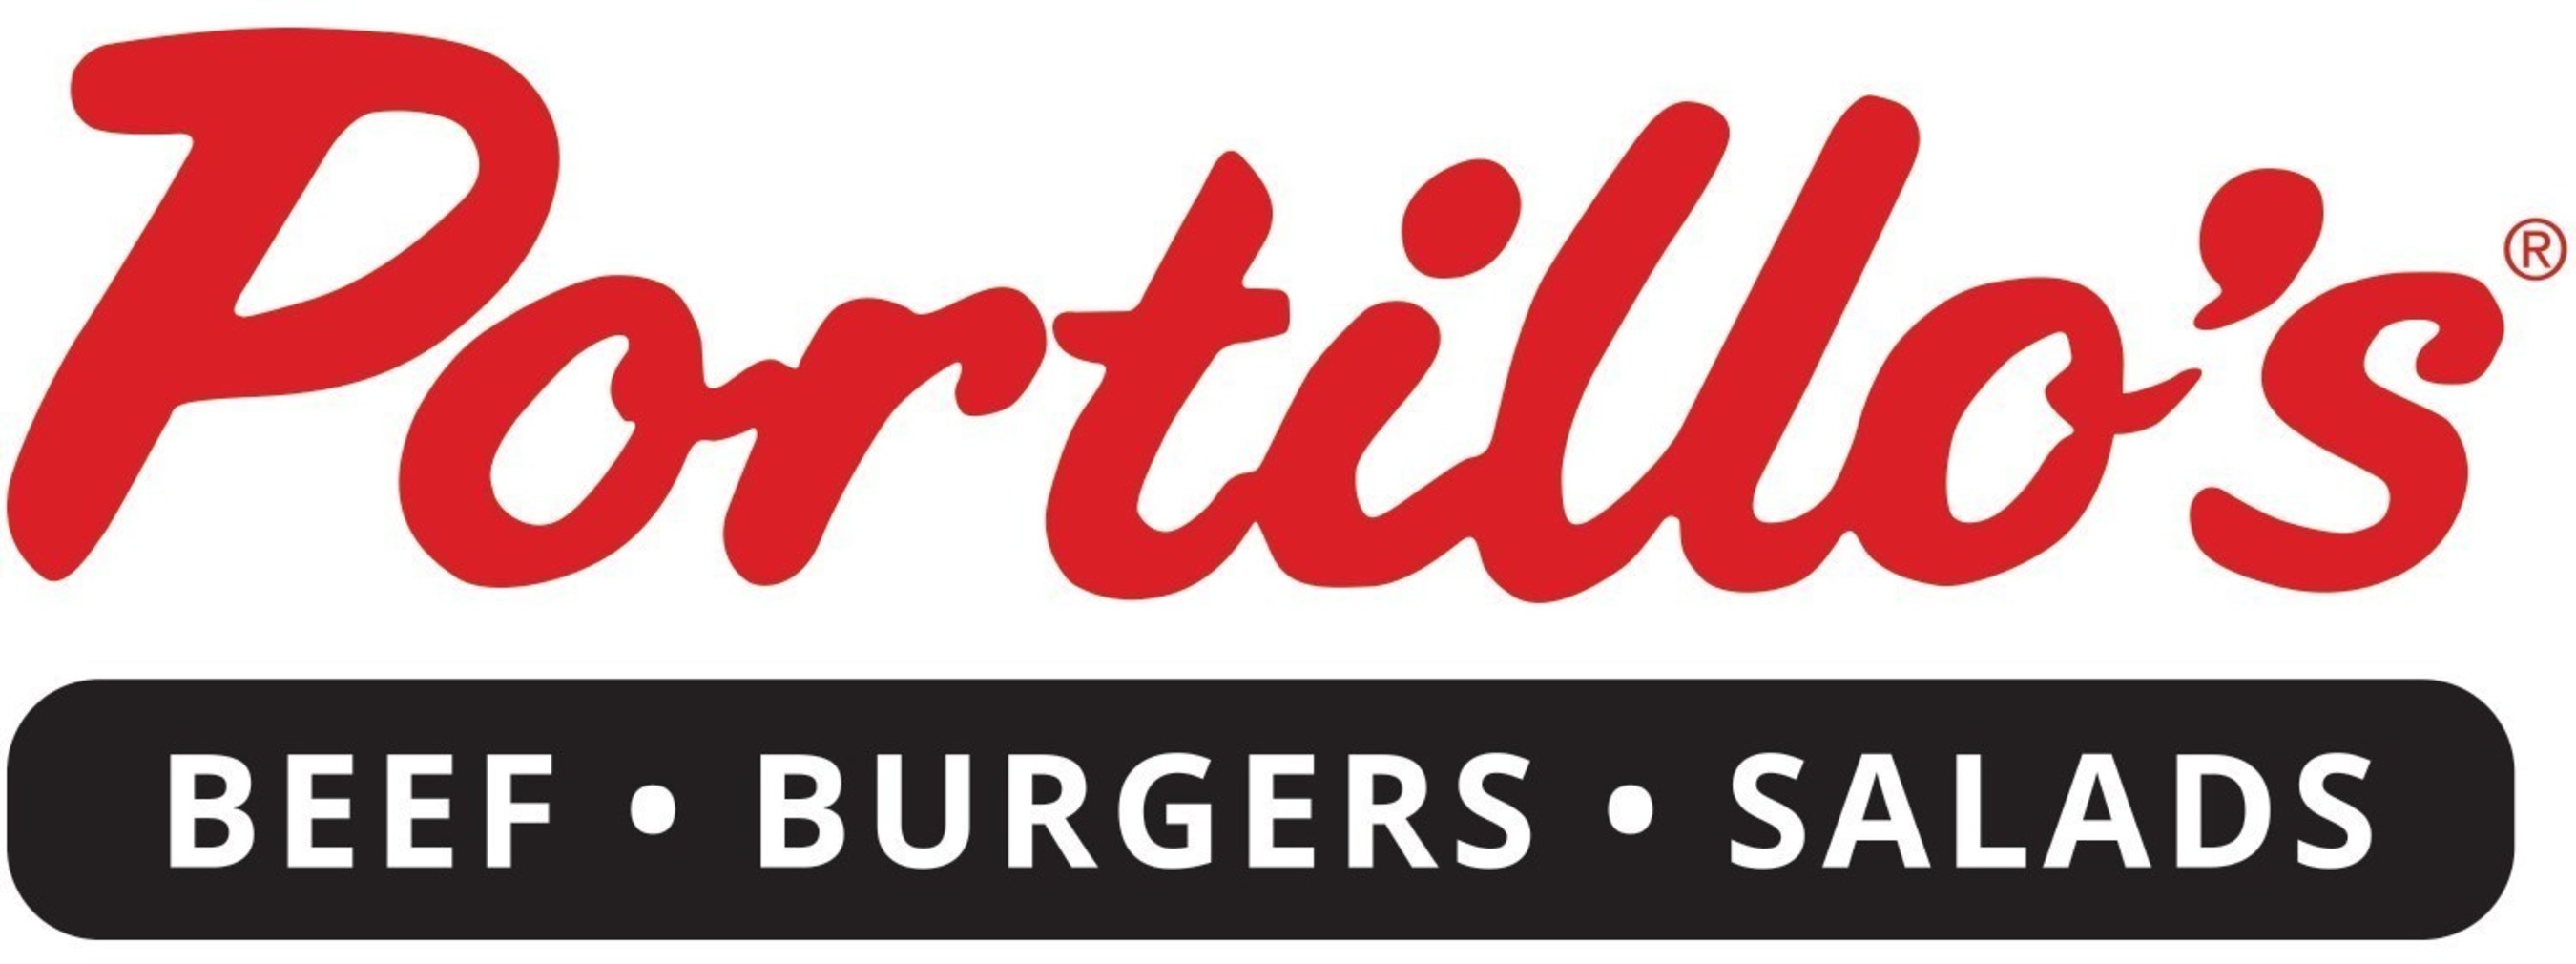 Portillo's Restaurant Names New CEO